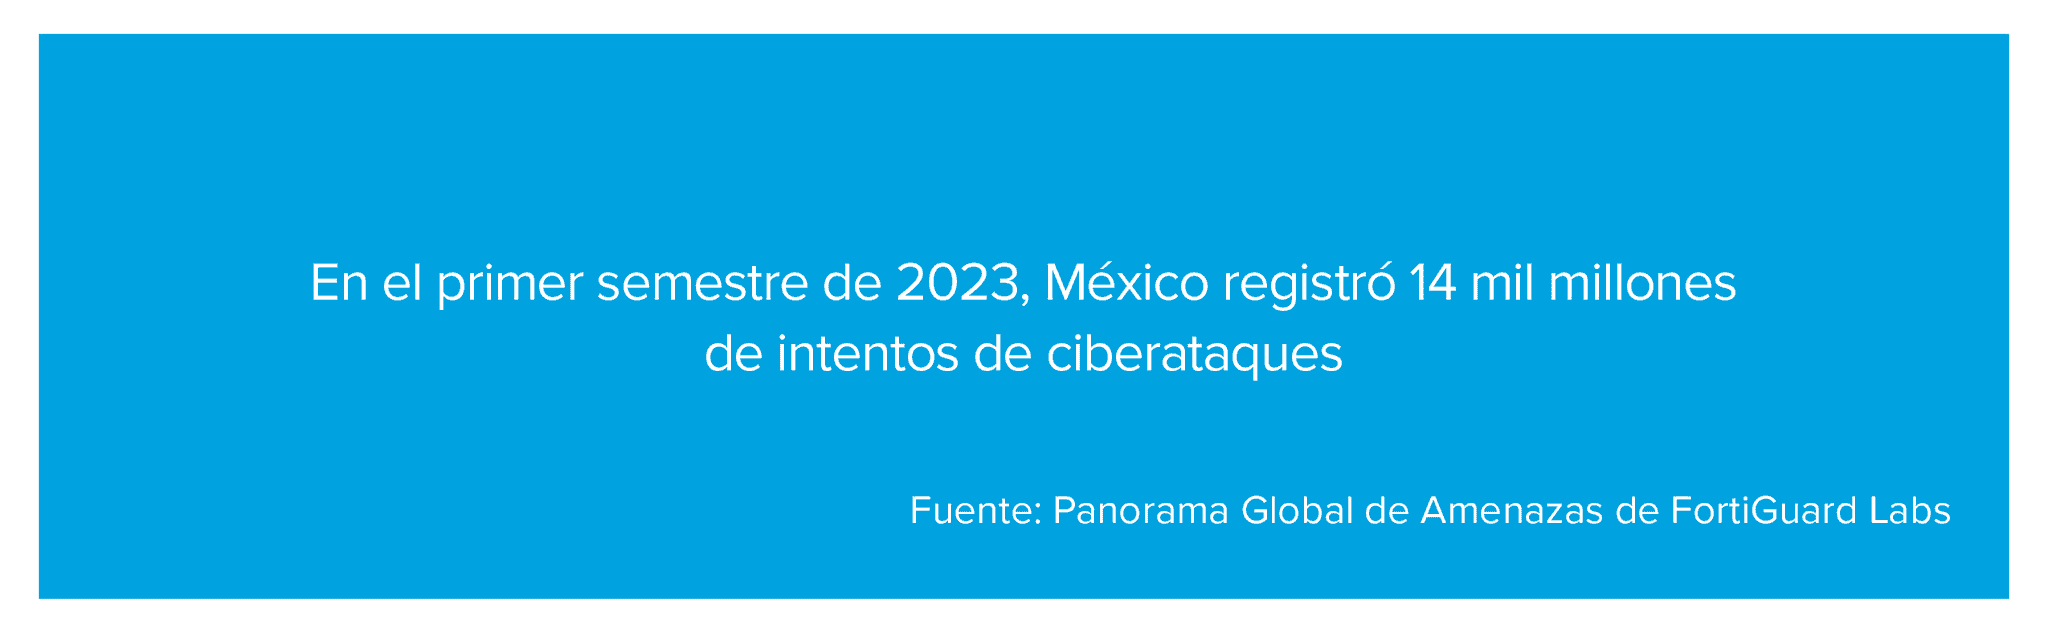 En el primer semestre de 2023, México registró 14 mil millones de intentos de ciberataques